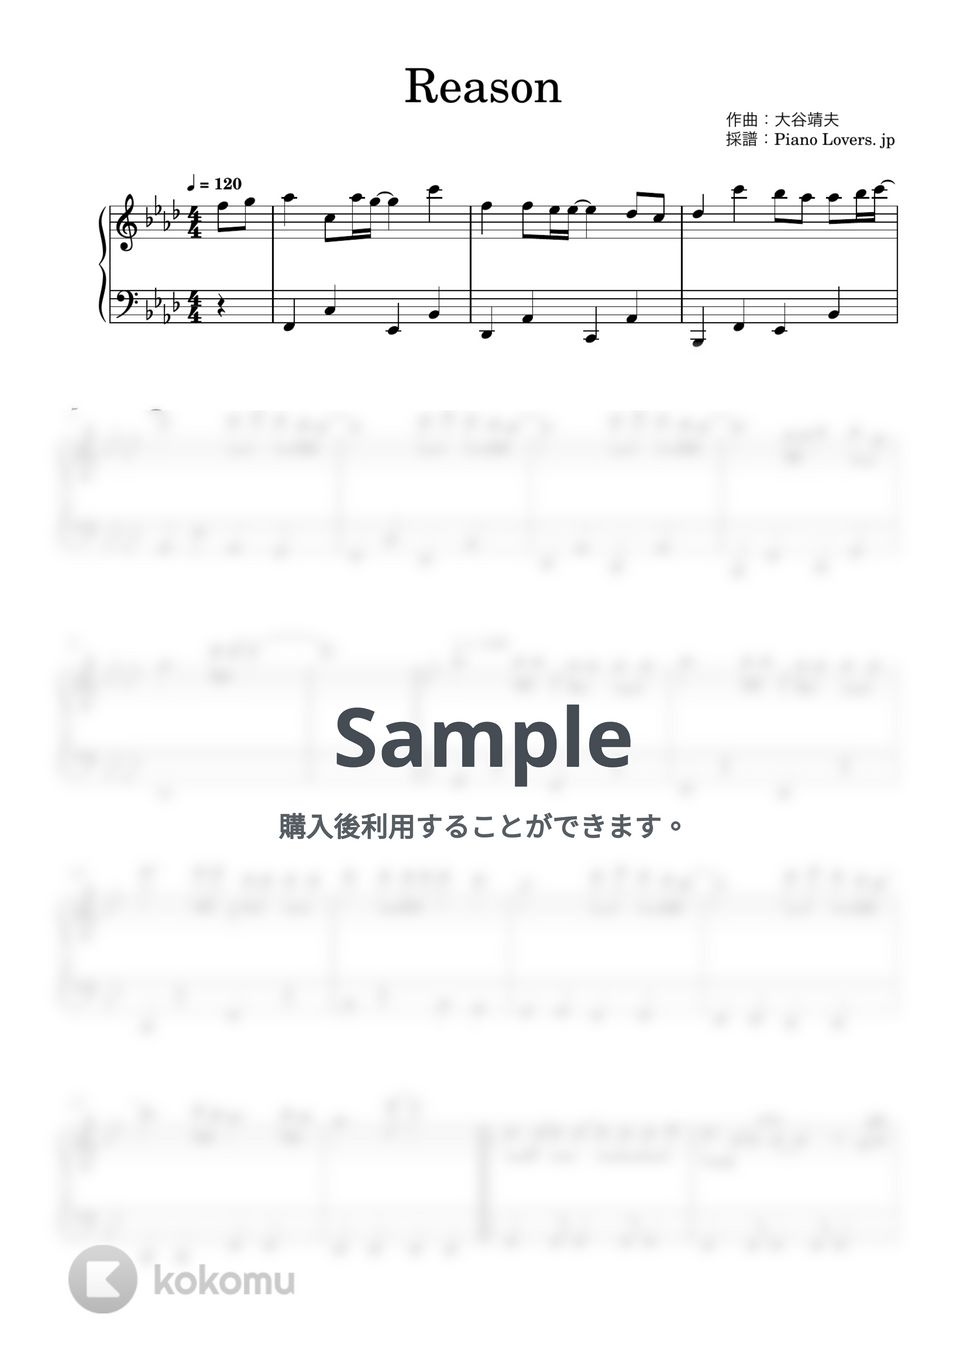 玉置成美 - Reason (機動戦士ガンダムSEED) by Piano Lovers. jp